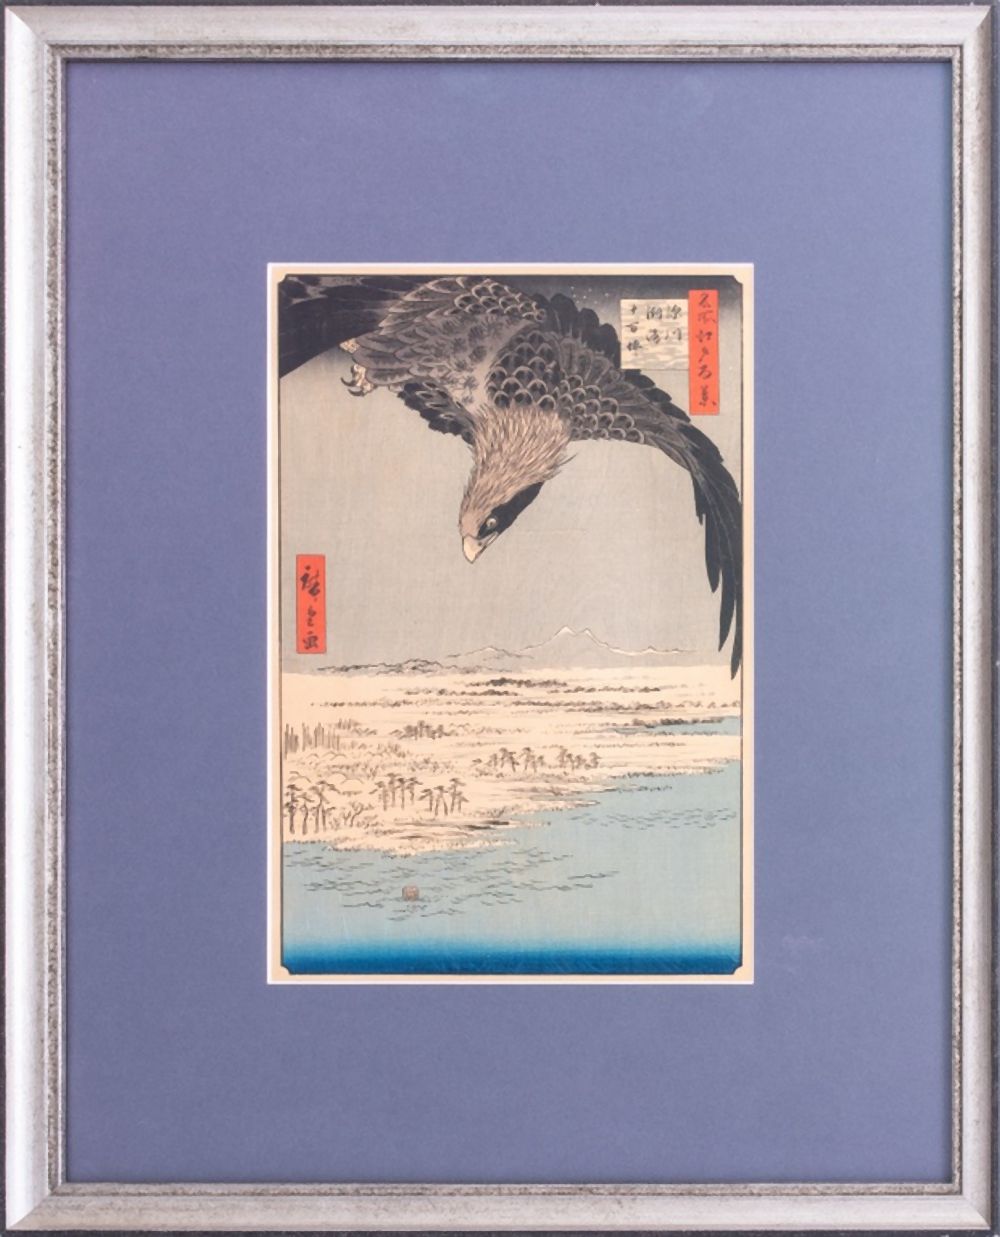 UTAGAWA HIROSHIGE 'EAGLE FLYING'